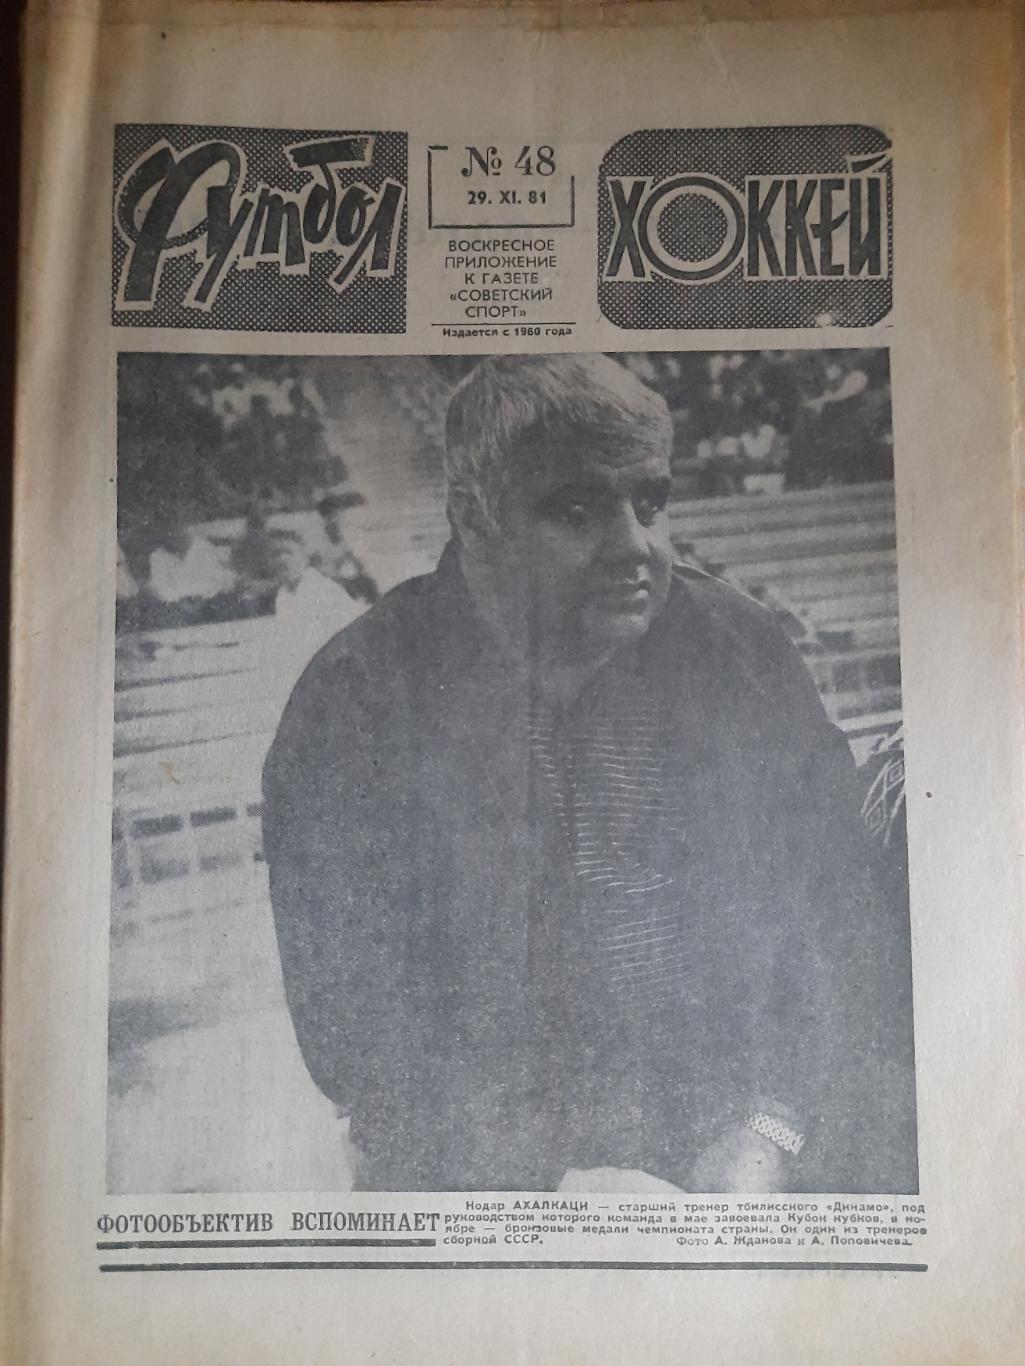 еженедельник футбол-хоккей #48,1981